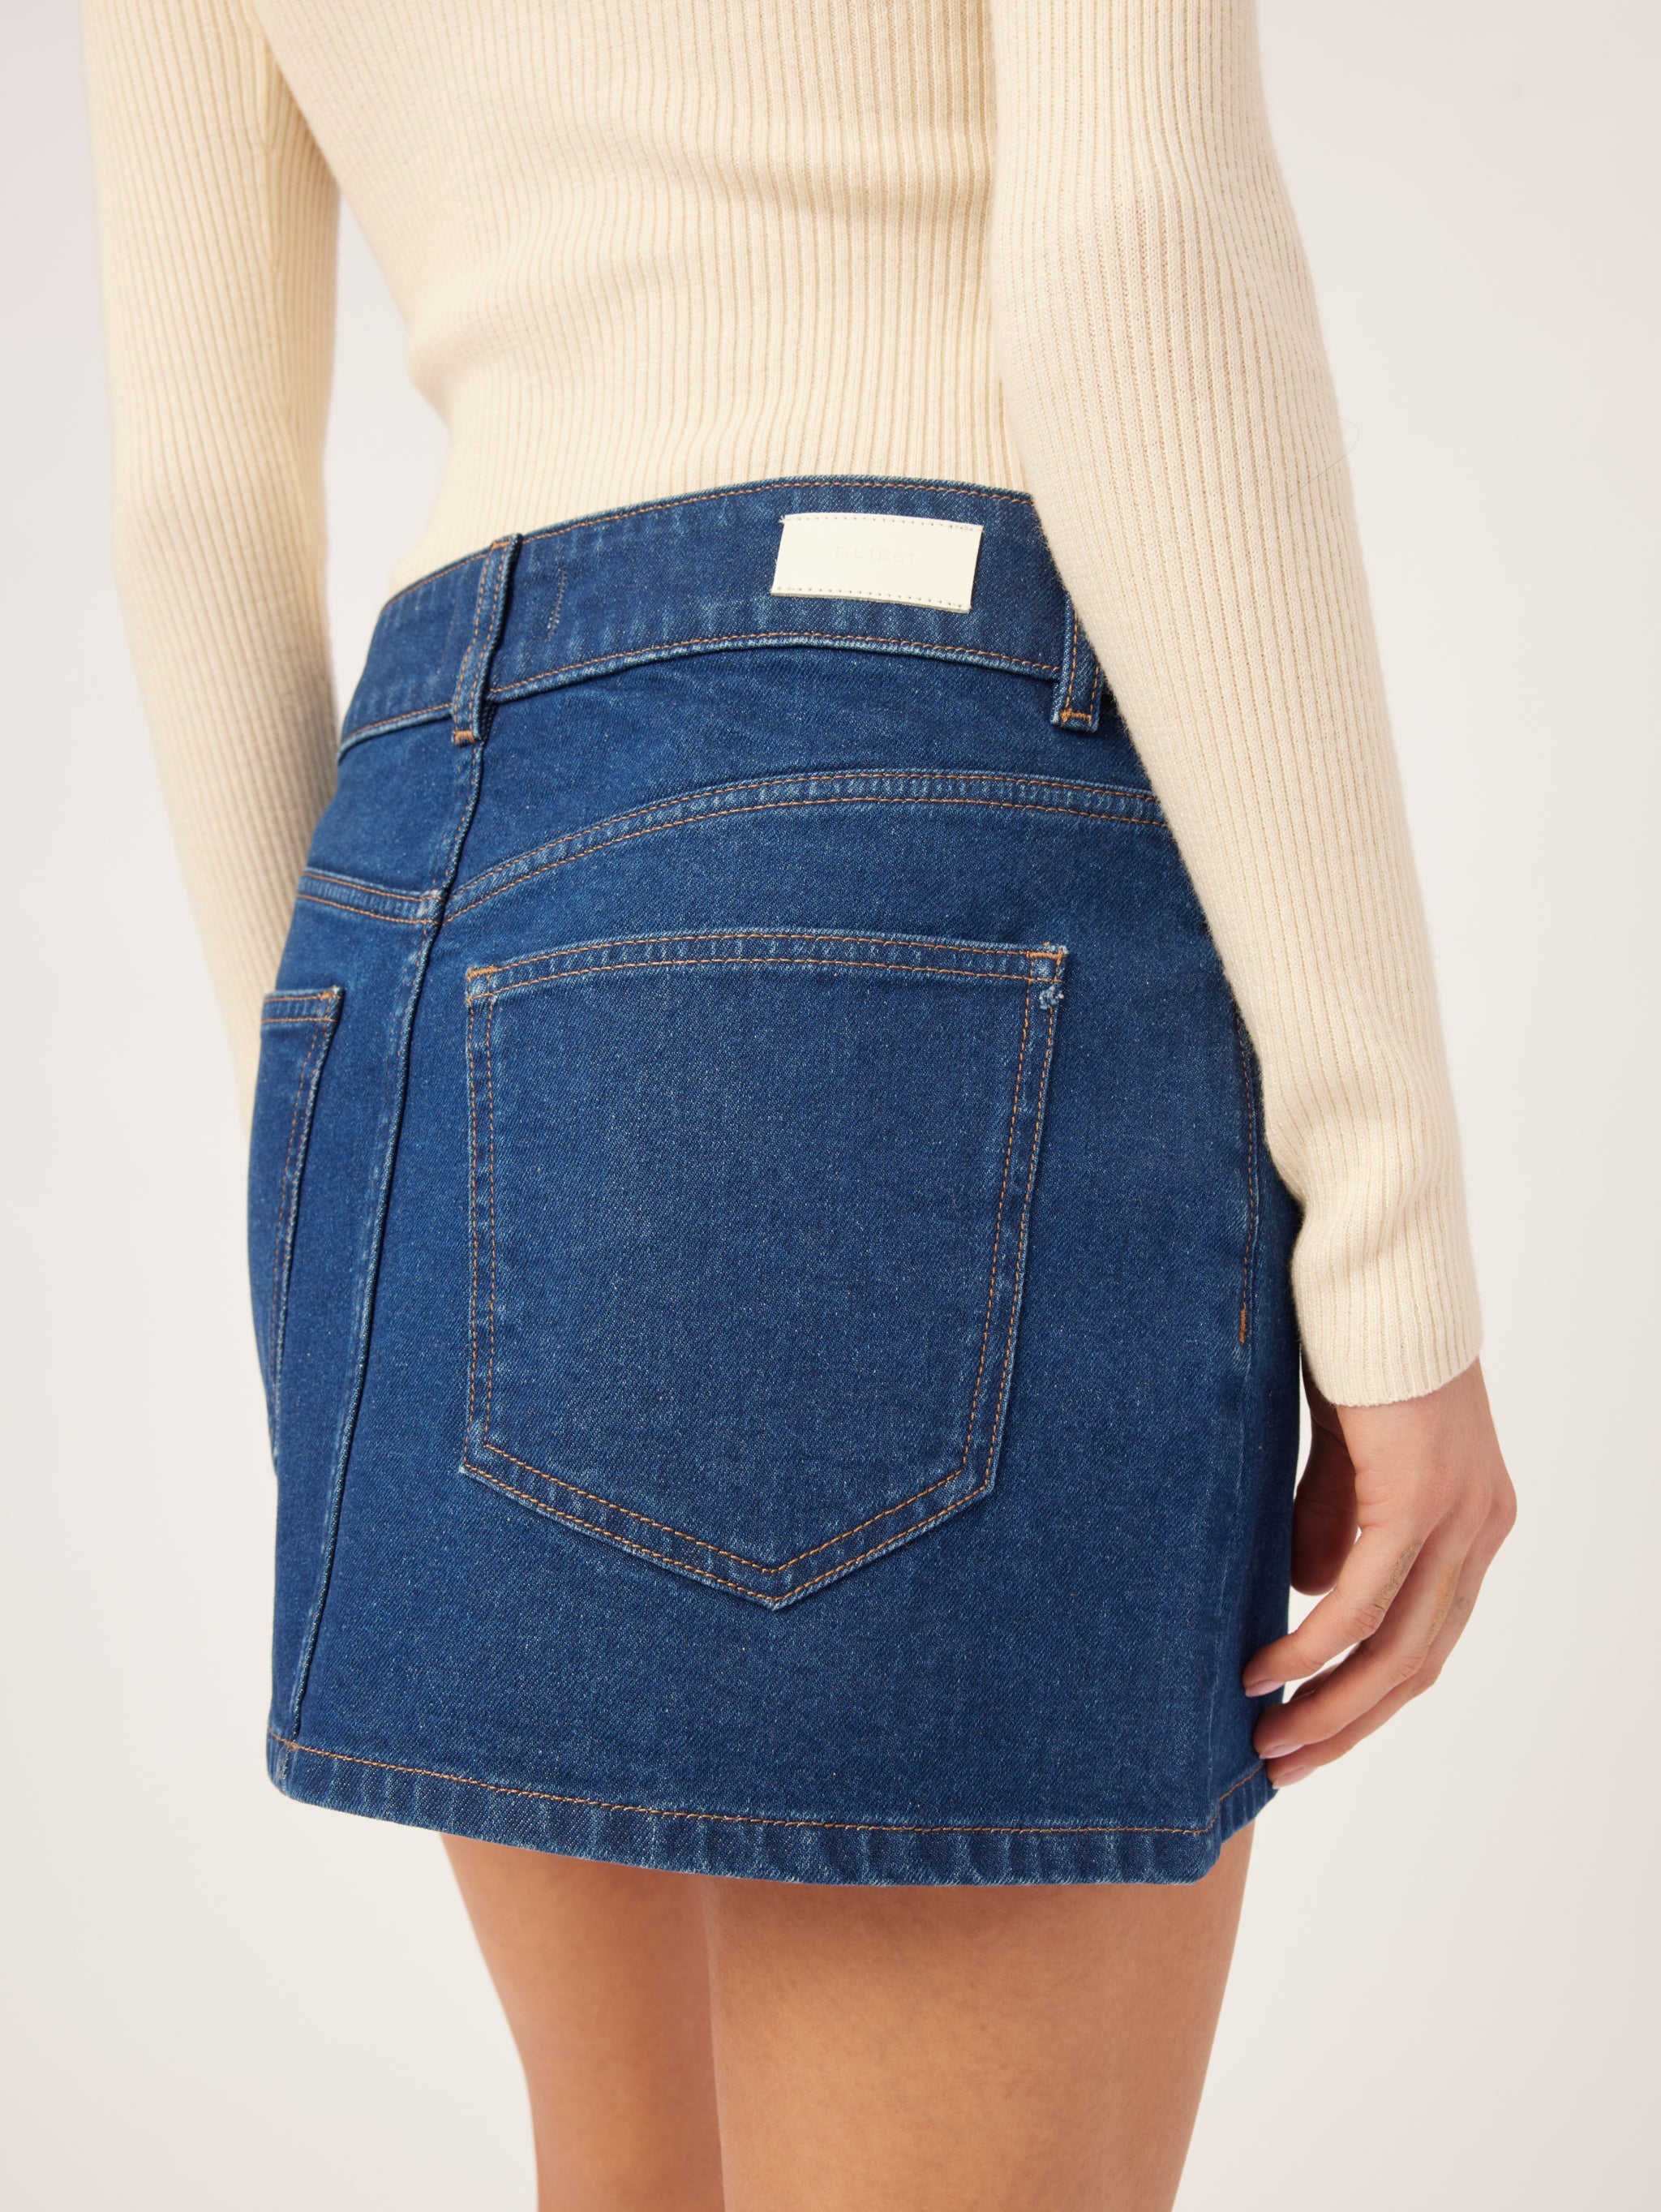 Alma Denim Low Rise Mini Skirt - Vibrant Rinse – DL1961